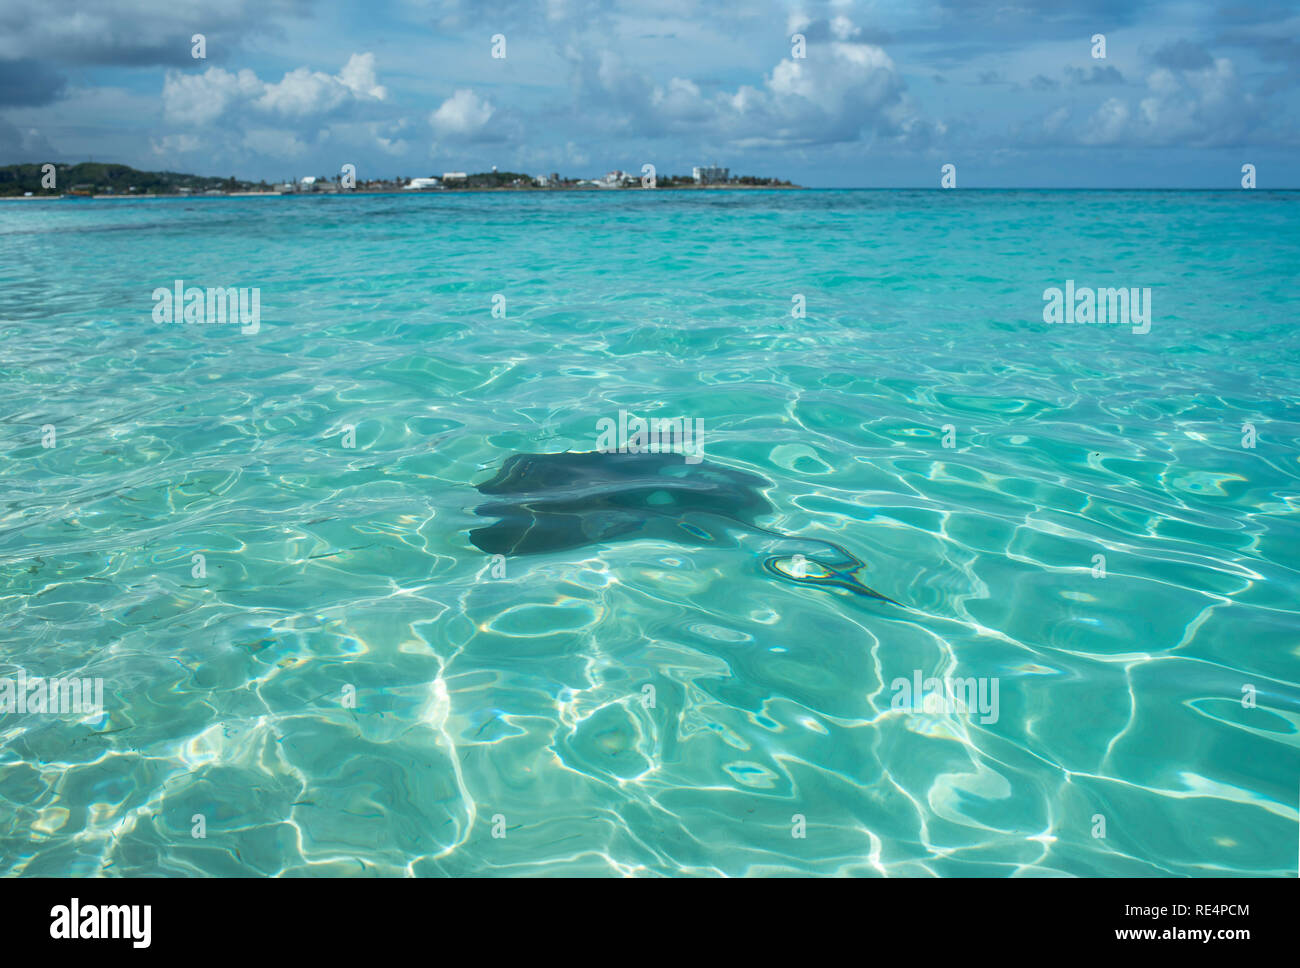 Caribbean Sea Life: stingray nuotare intorno al Mare di sette colori. Johnny Cay, San Andrés isola, Colombia. Ott 2018 Foto Stock